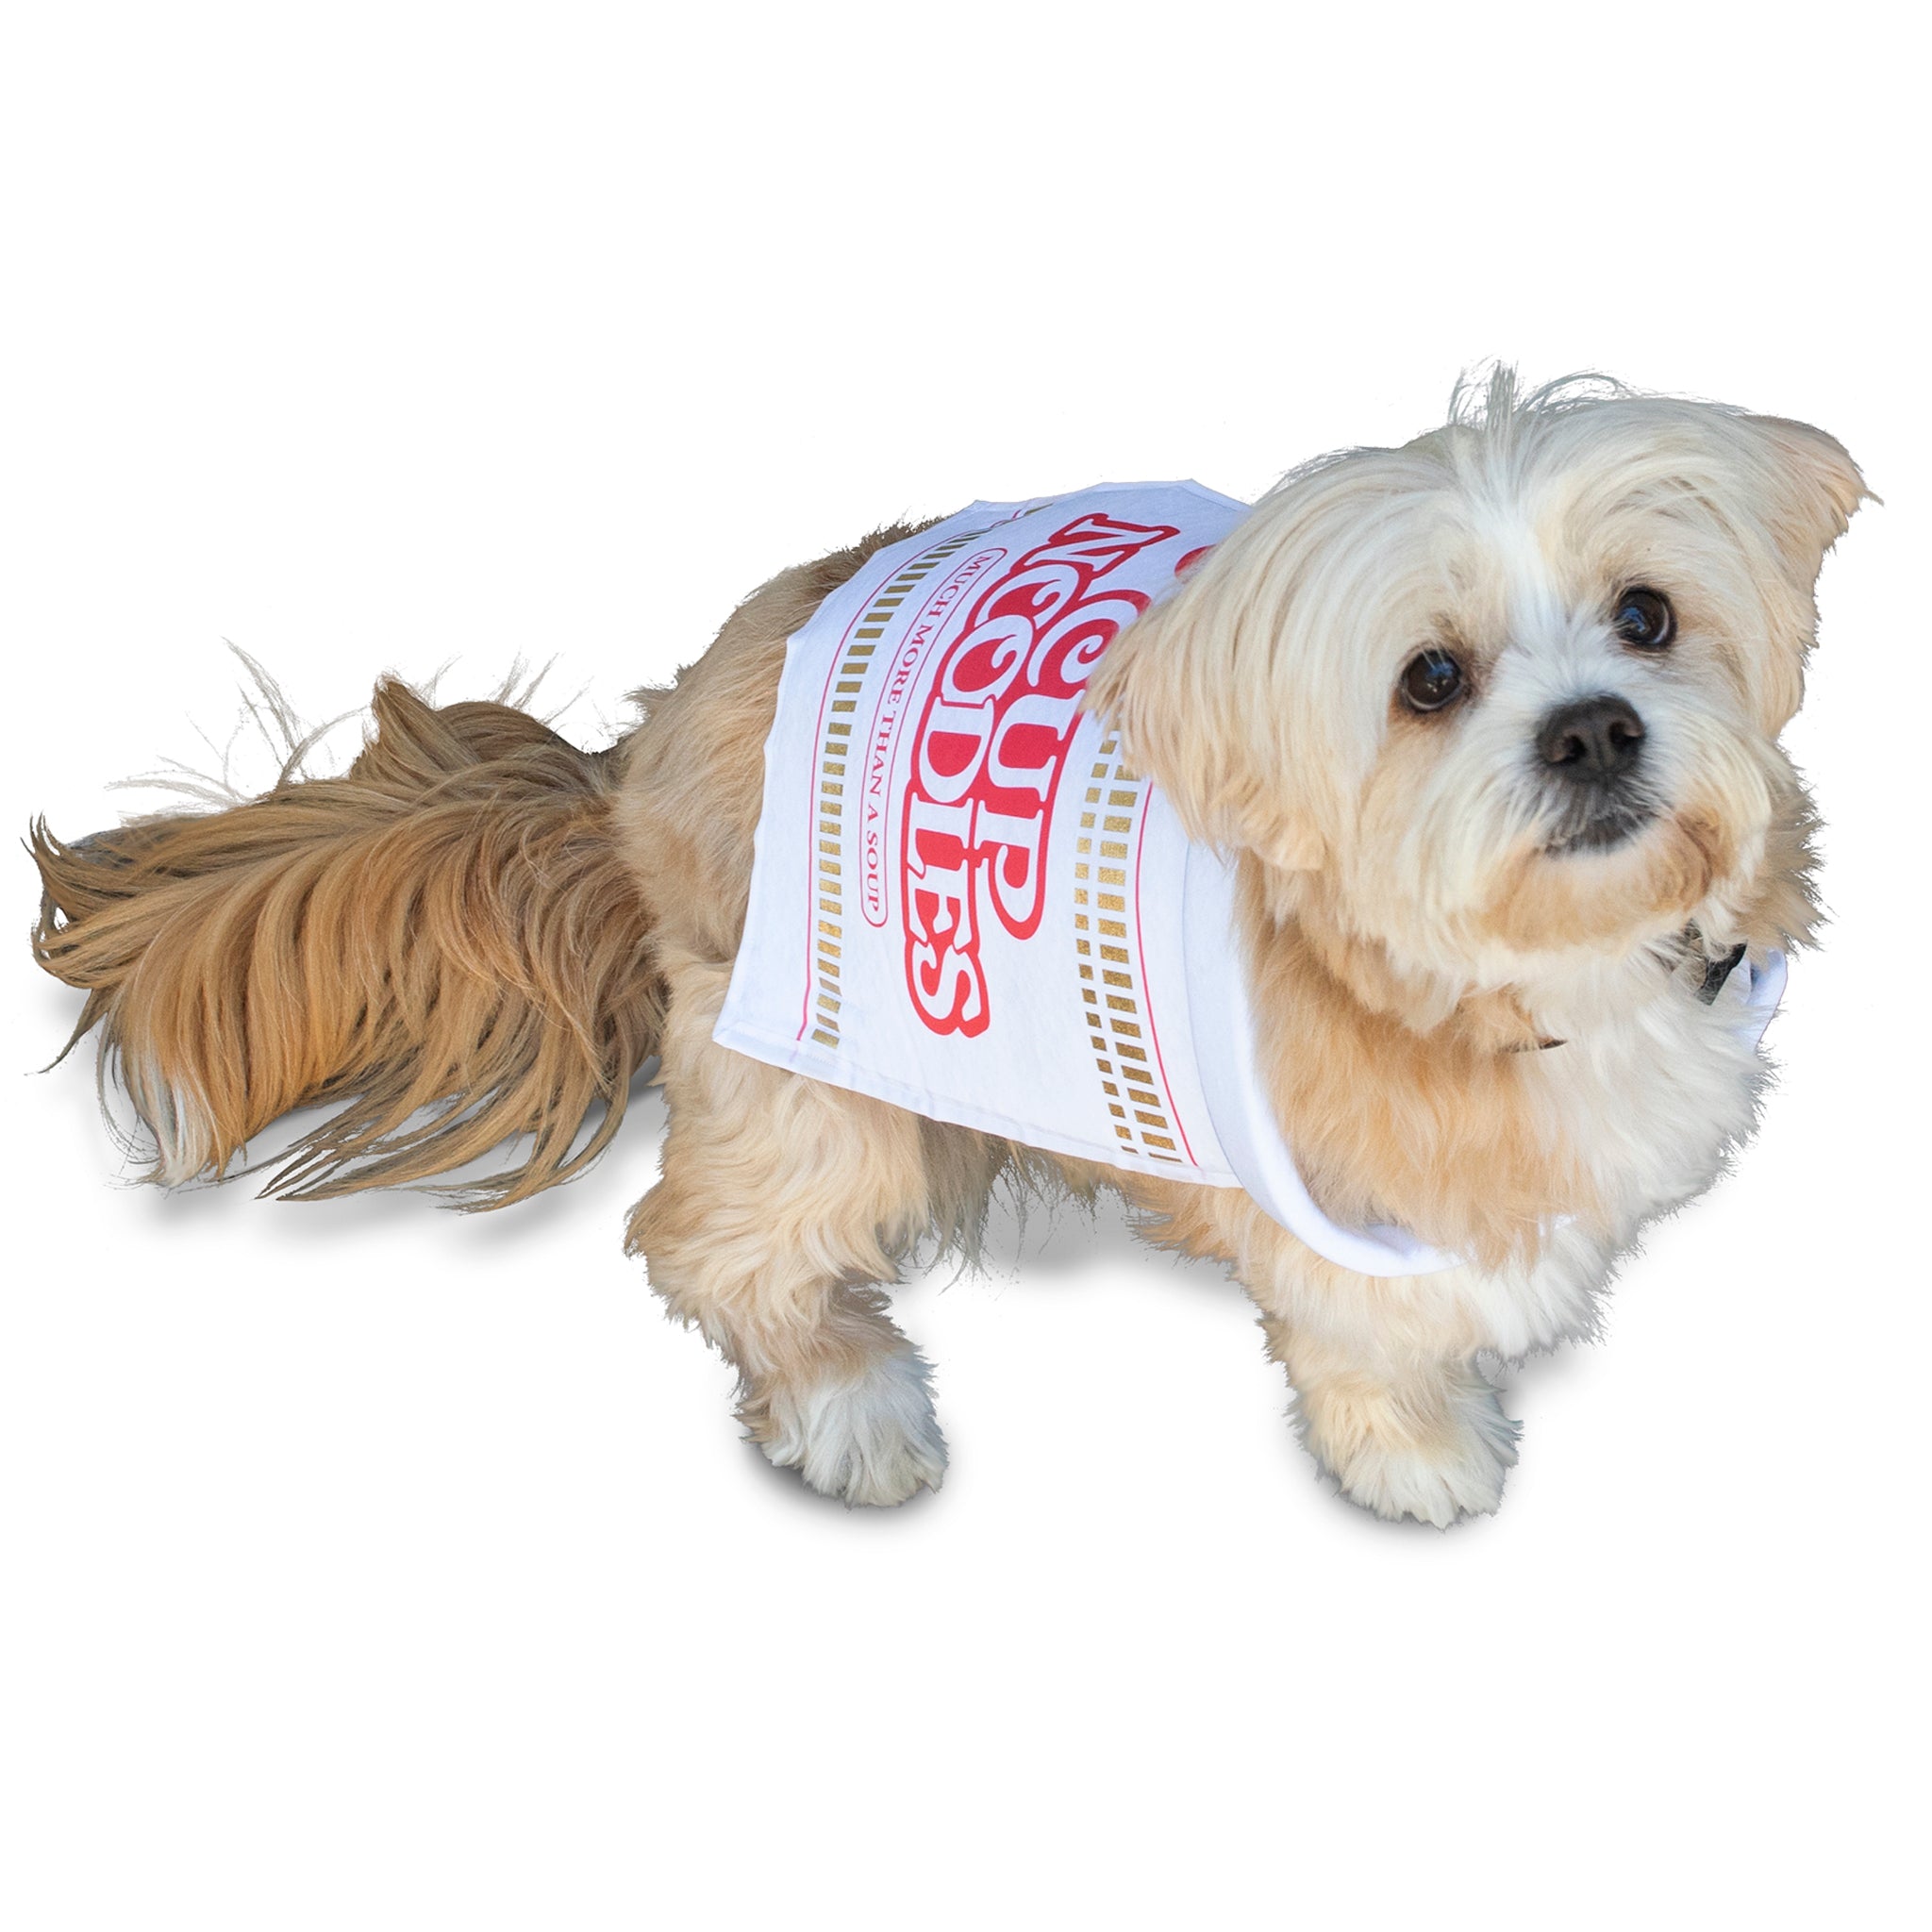 Dog Costume Nissin Fan Store